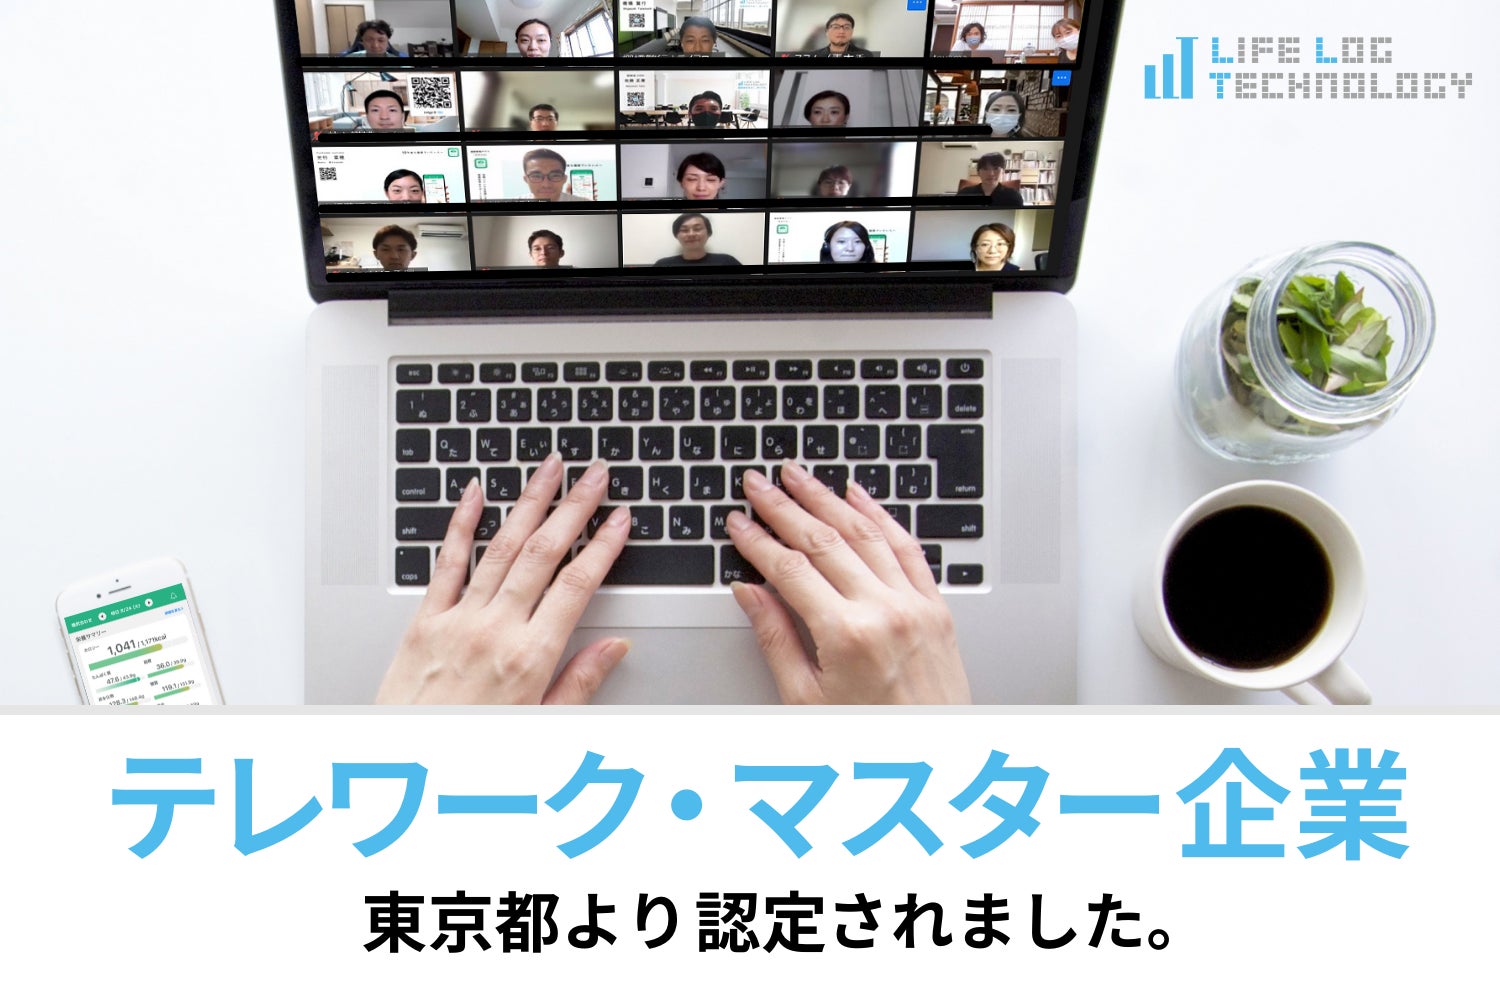 ライフログテクノロジーが、東京都の「テレワーク・マスター企業」に認定